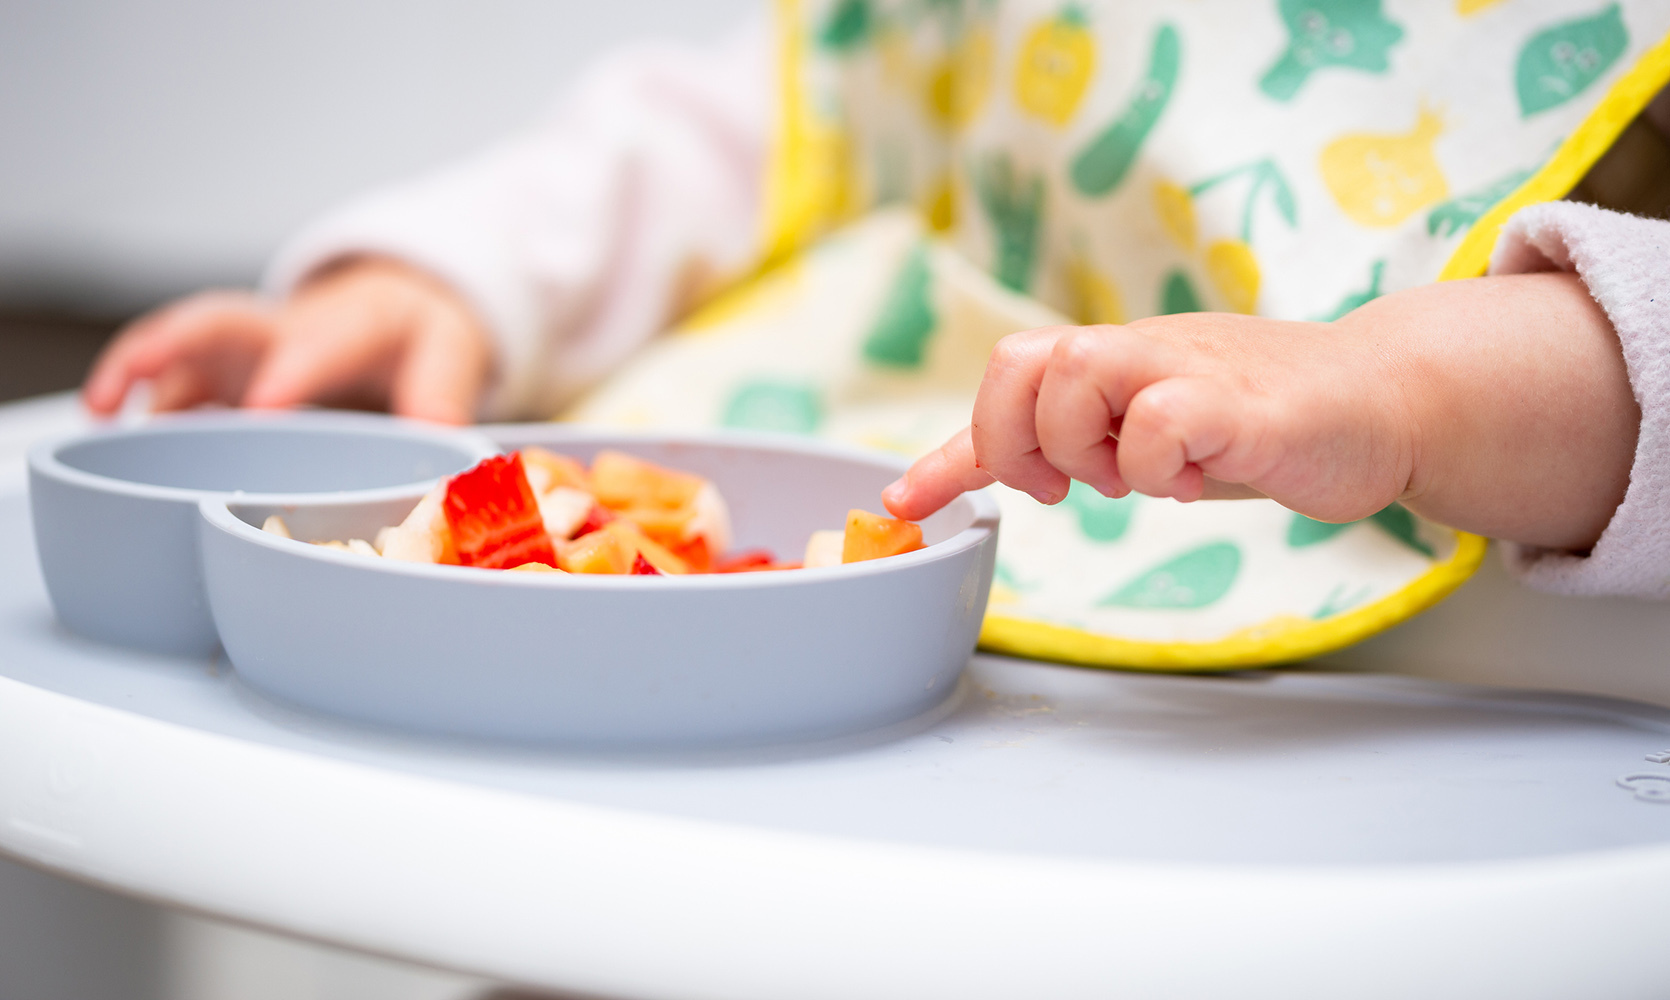 Co zrobić, jeśli pojawią się zaburzenia odżywiania u dziecka? /fot. iStock